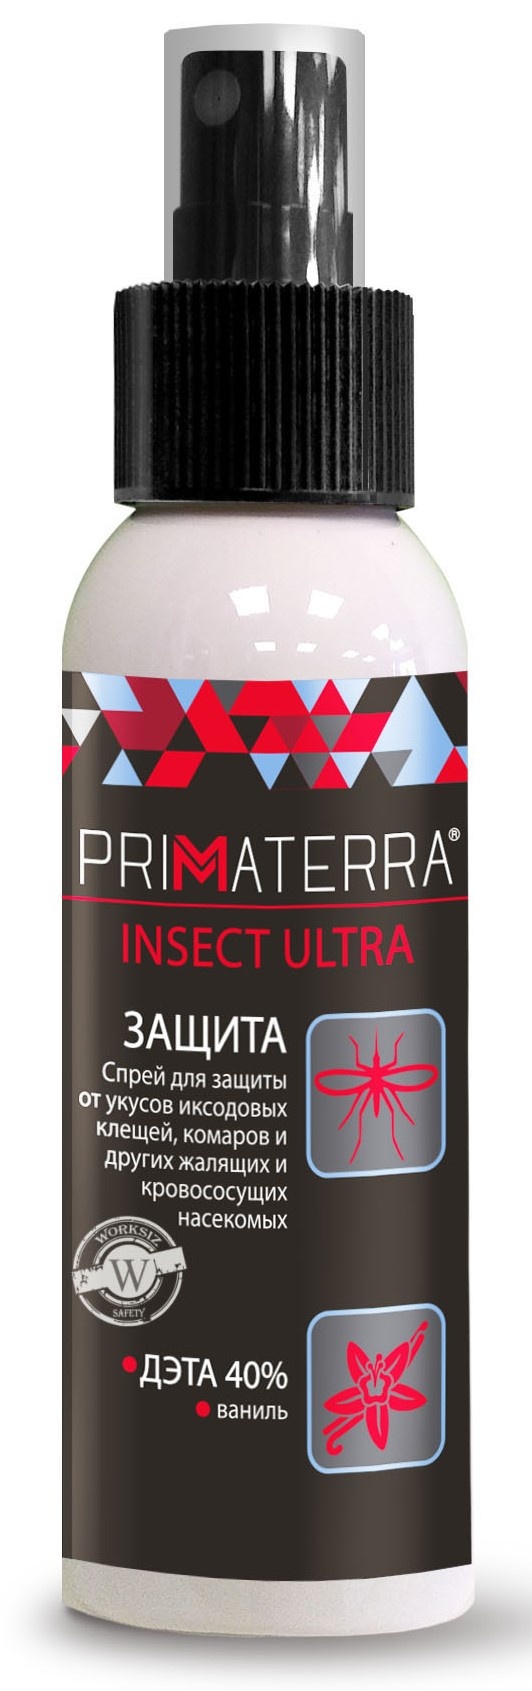 Защитный спрей PRIMATERRA Insect Ultra для кожи | 100мл. 